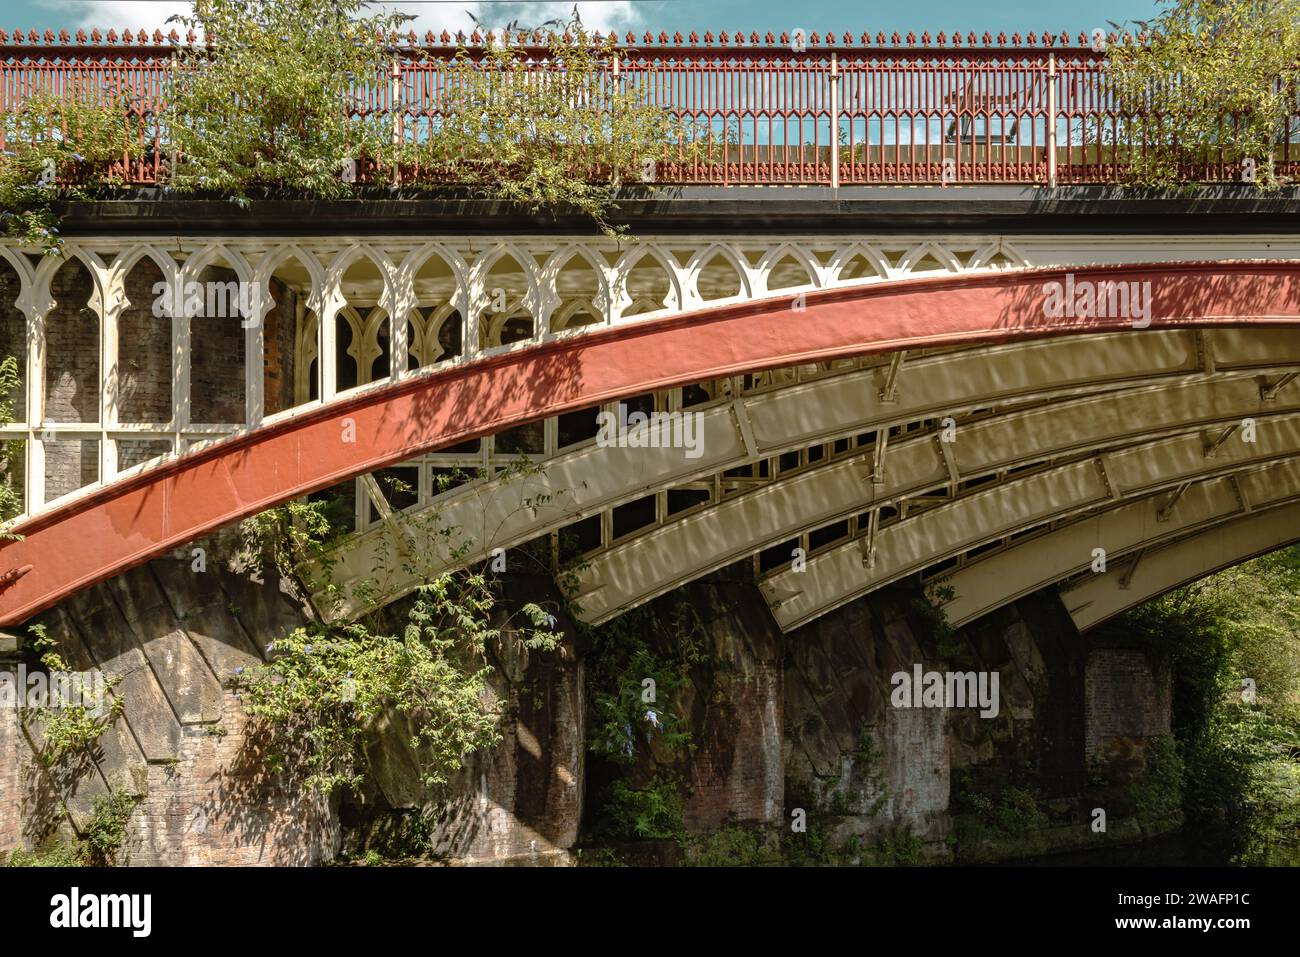 Détail de la beauté architecturale d'un pont ferroviaire victorien rouge et blanc. Exemple d'élégance et d'ingénierie victoriennes. Banque D'Images